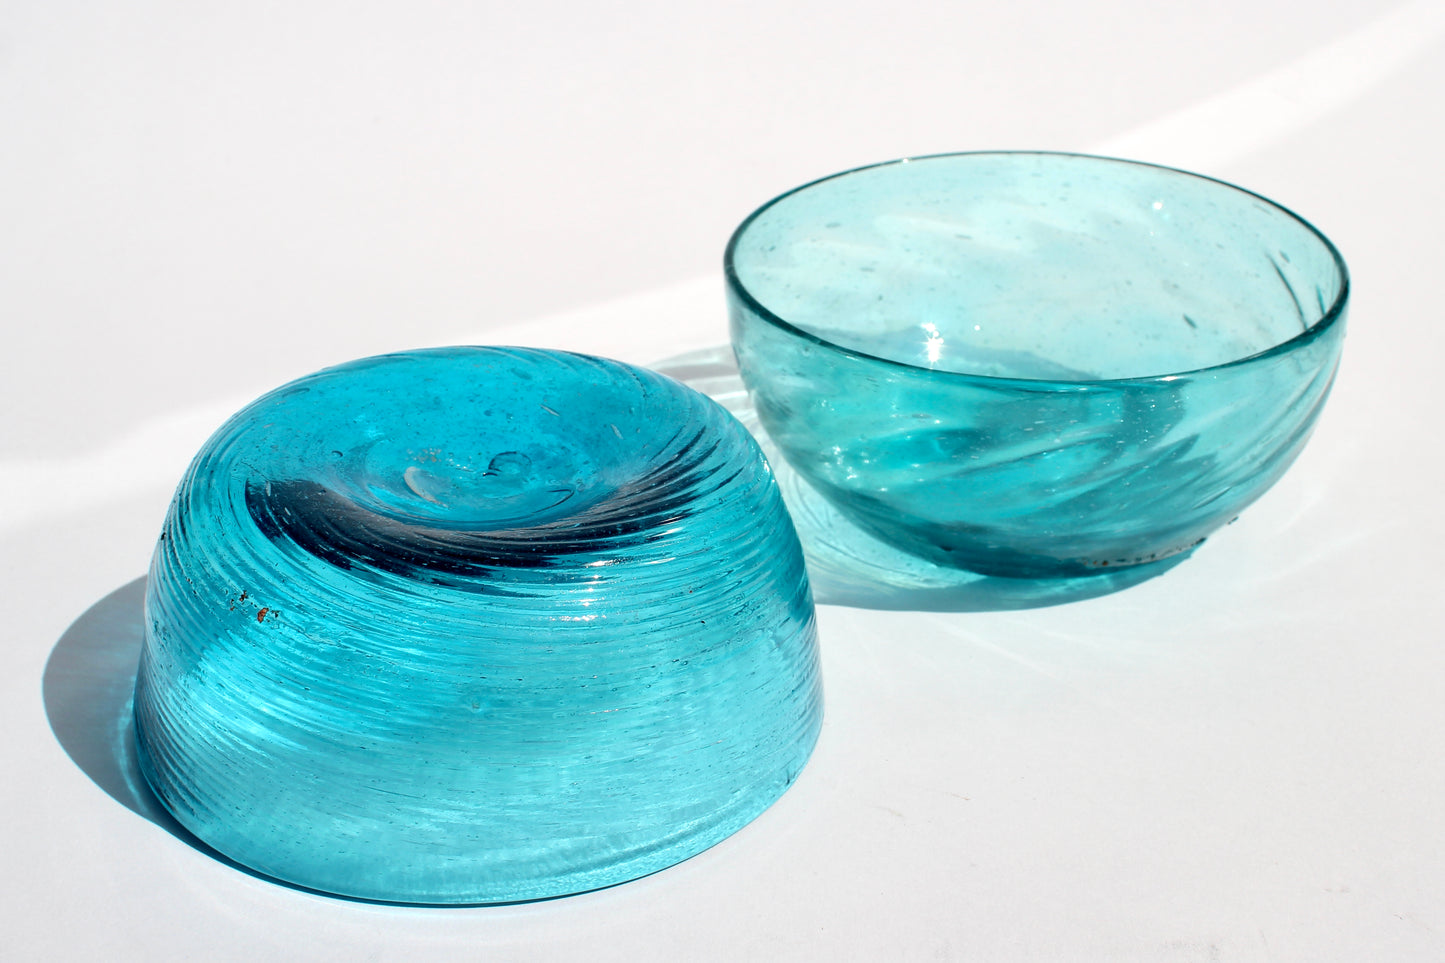 handblown aqua glass bowls